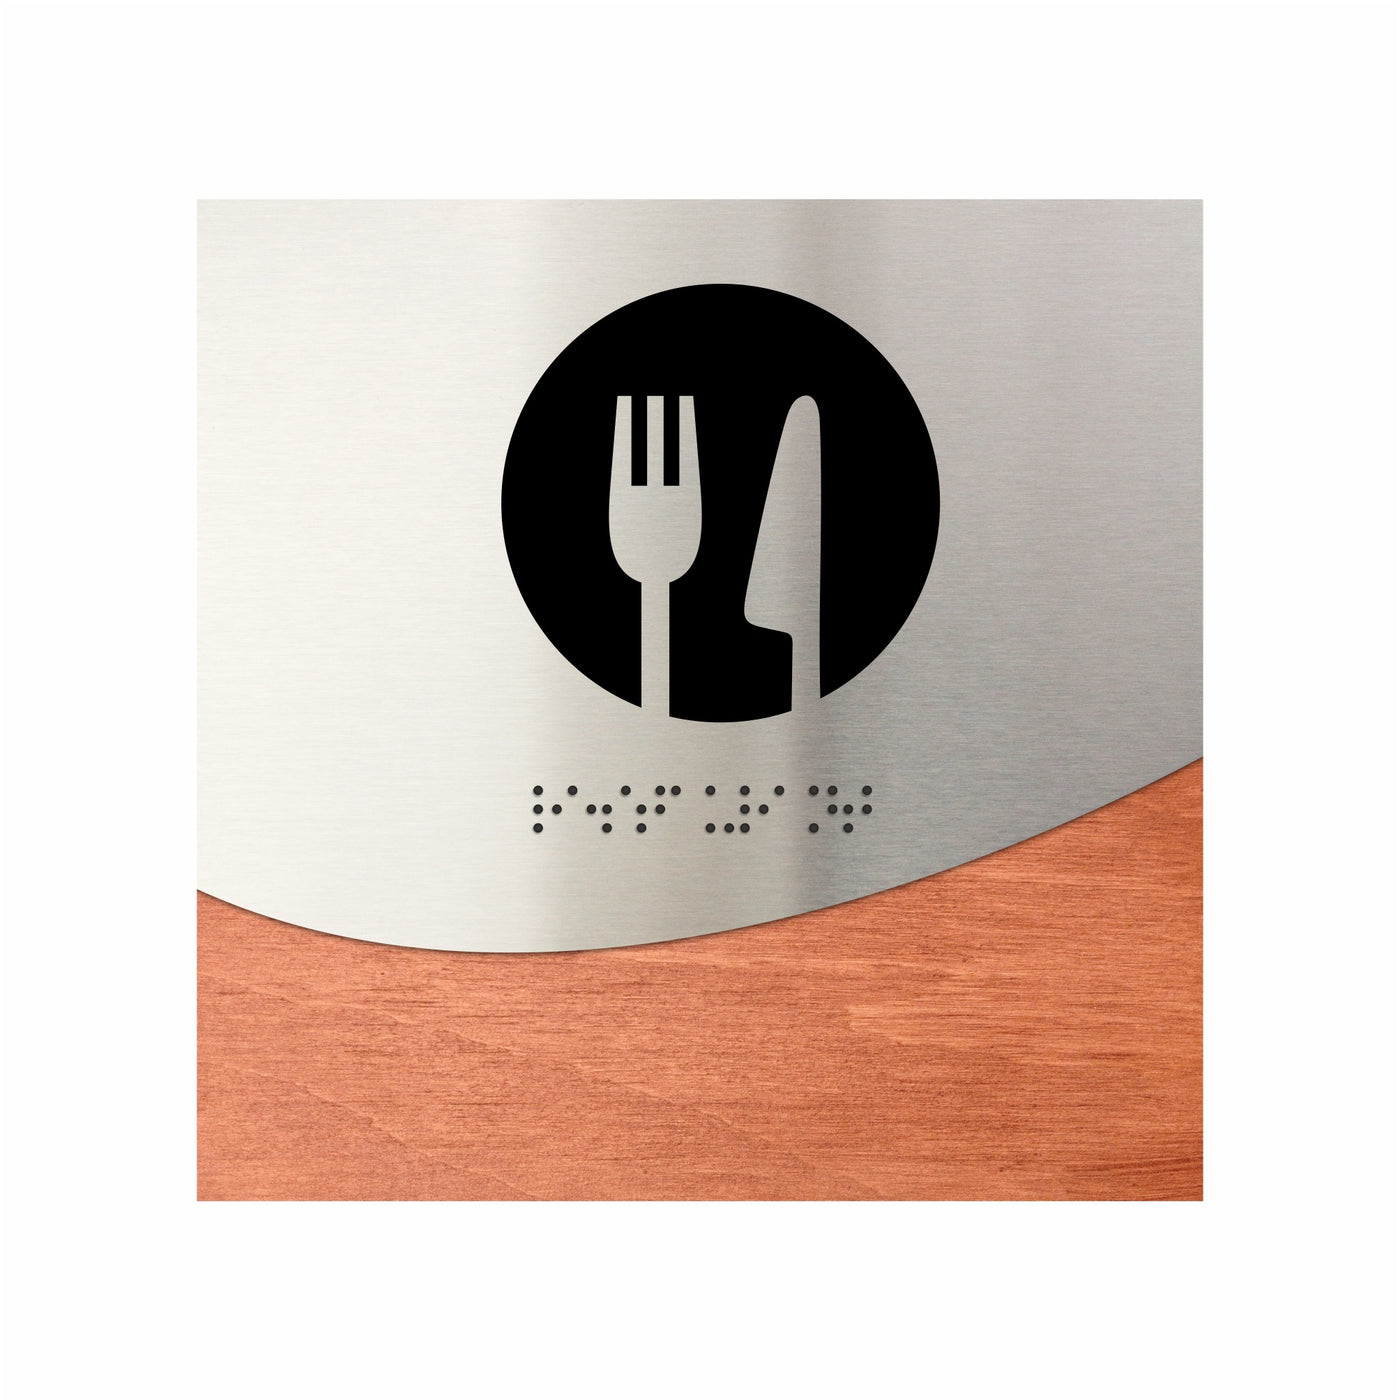 Steel Dining Room Sign "Jure" Design